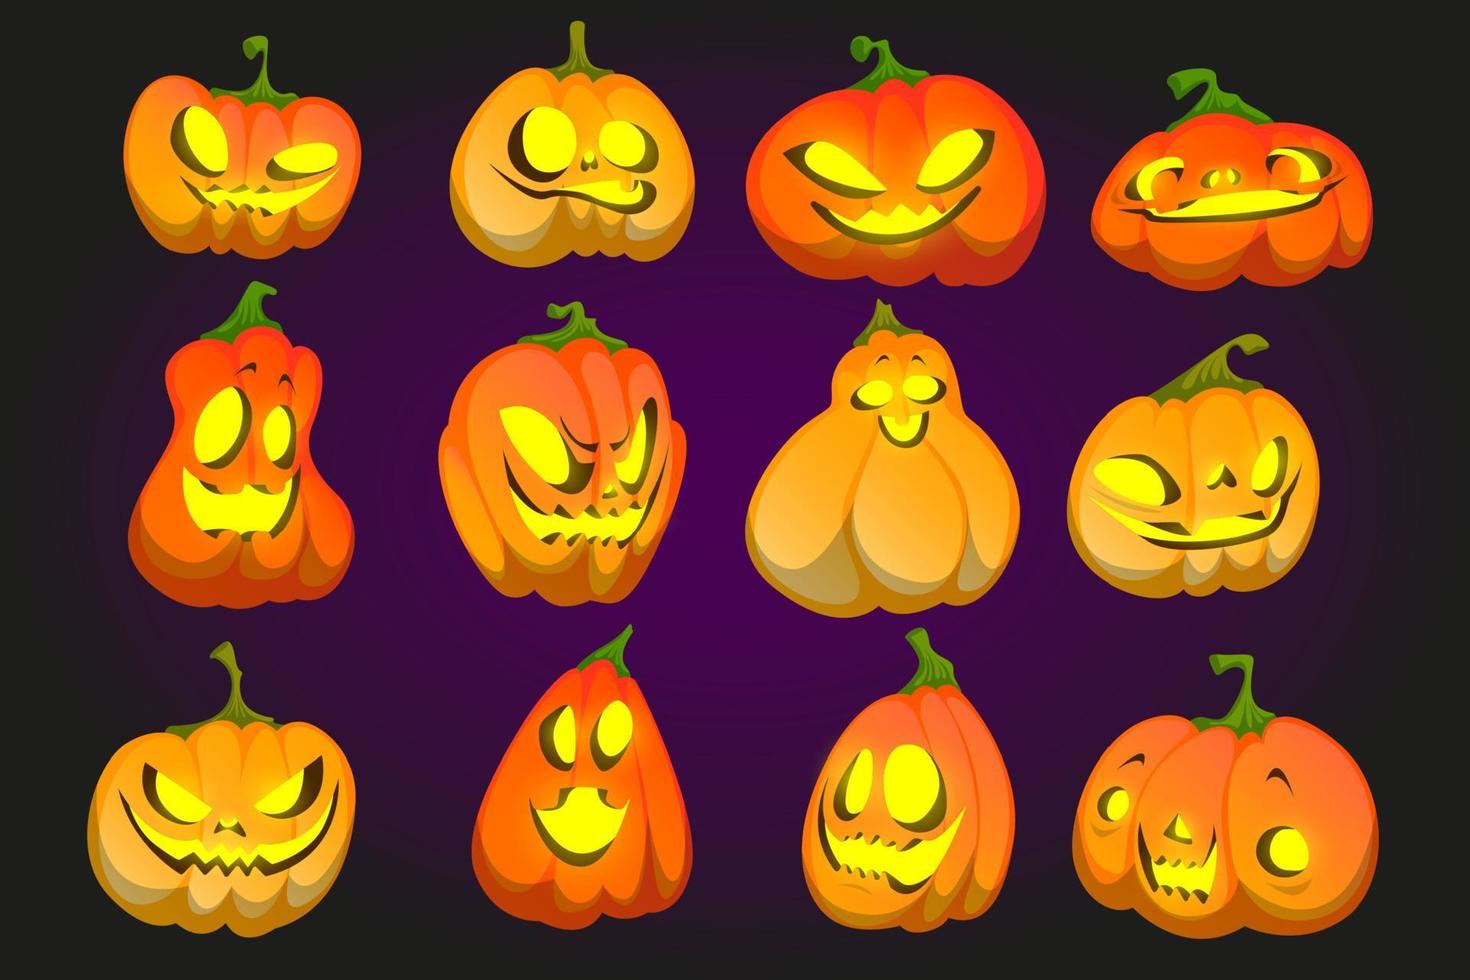 Halloween pumpkin funny faces, jack-o-lanterns set vector